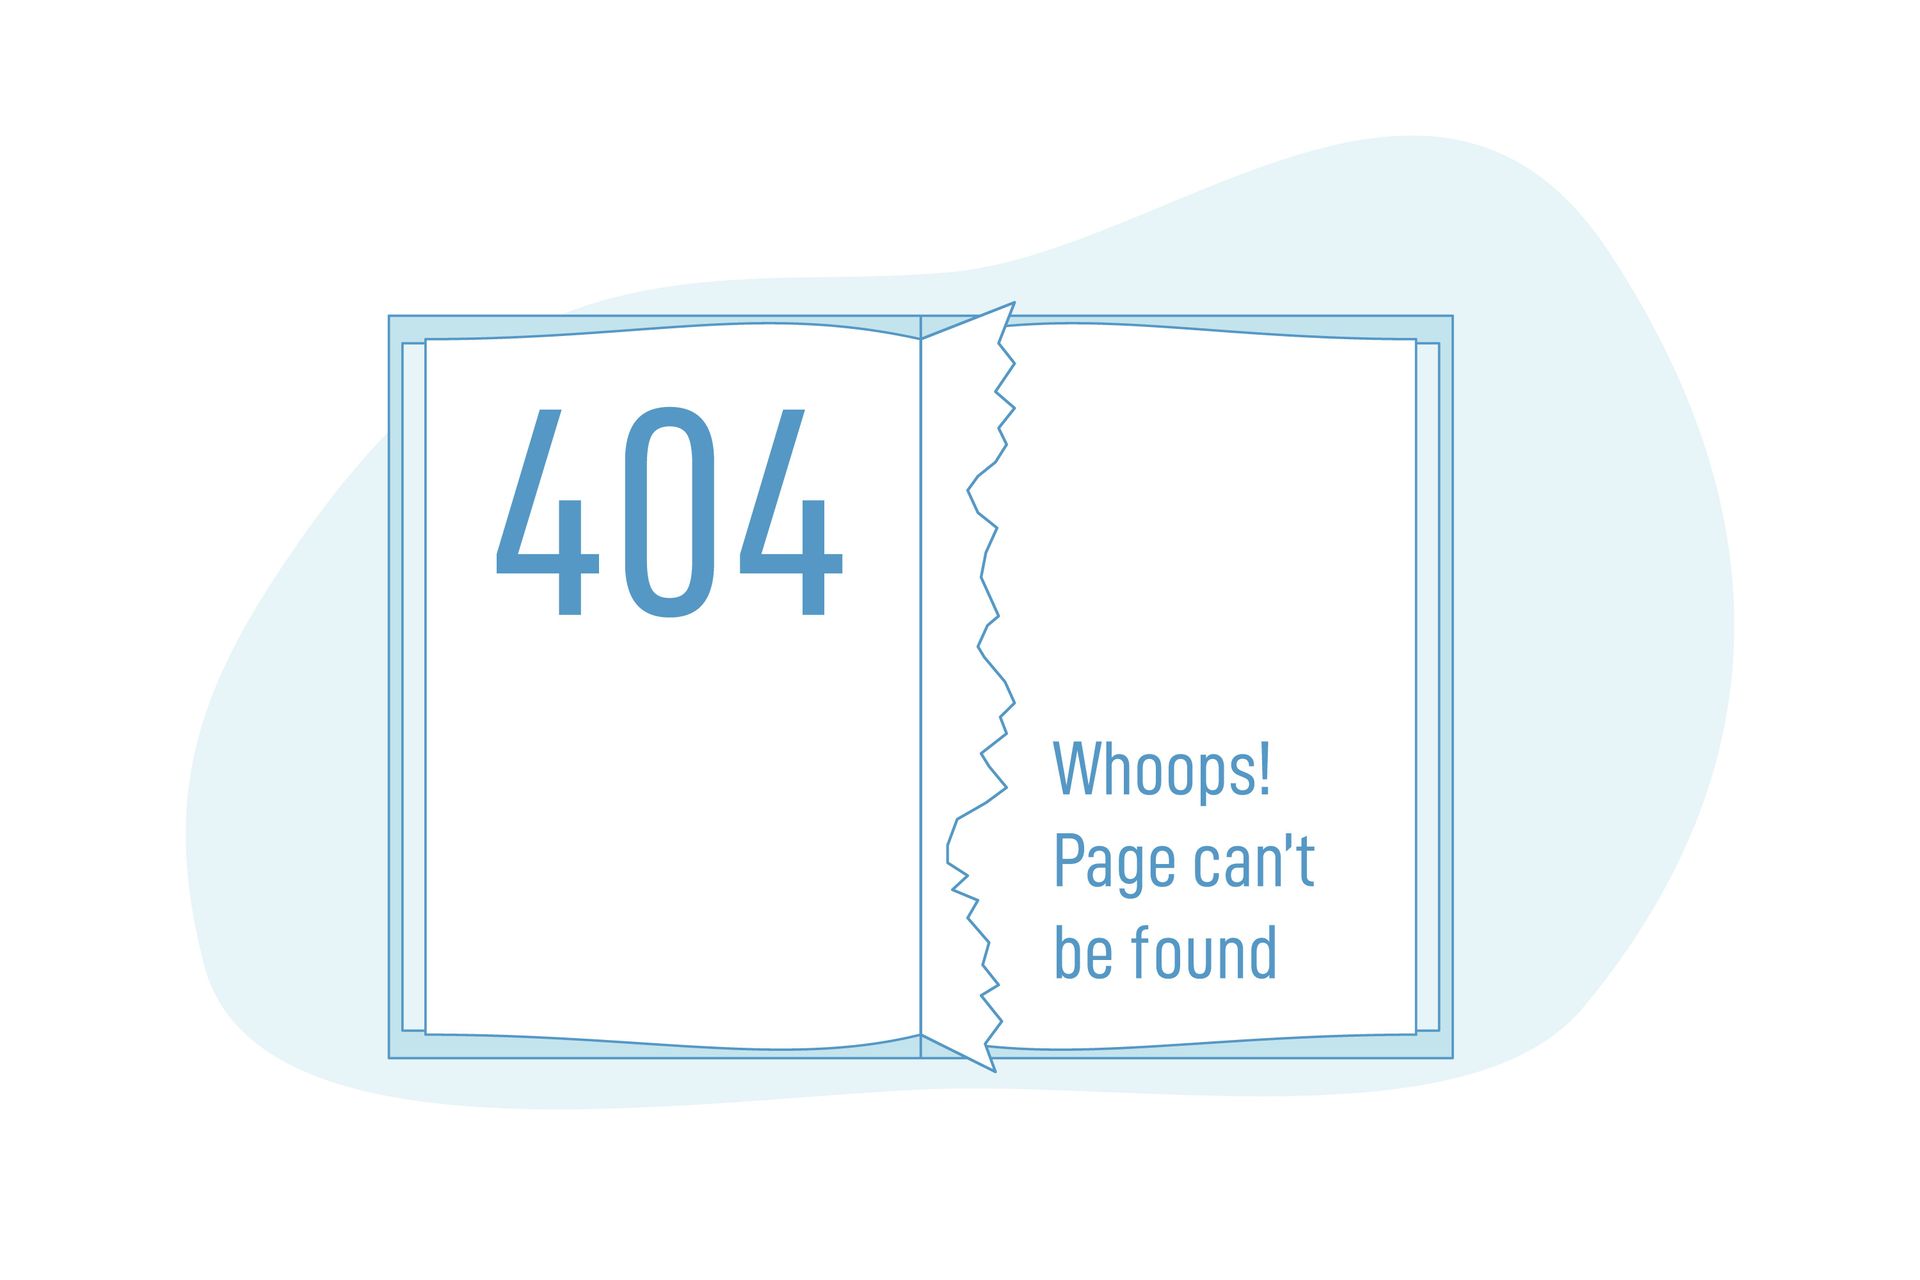 Grafik von einem Buch mit einer herausgerissenen Seite und dem Text "Page can't be found"